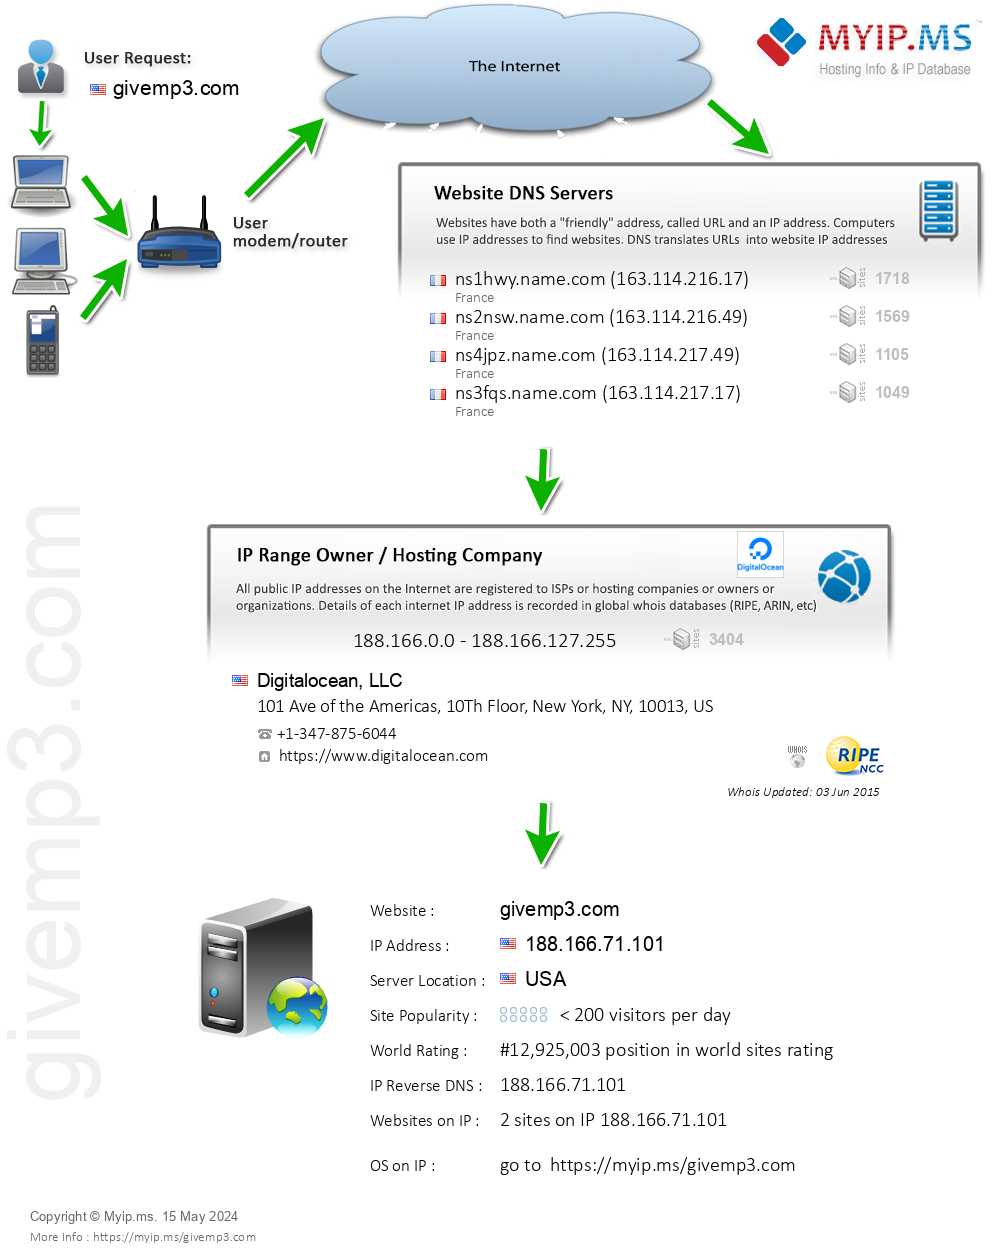 Givemp3.com - Website Hosting Visual IP Diagram